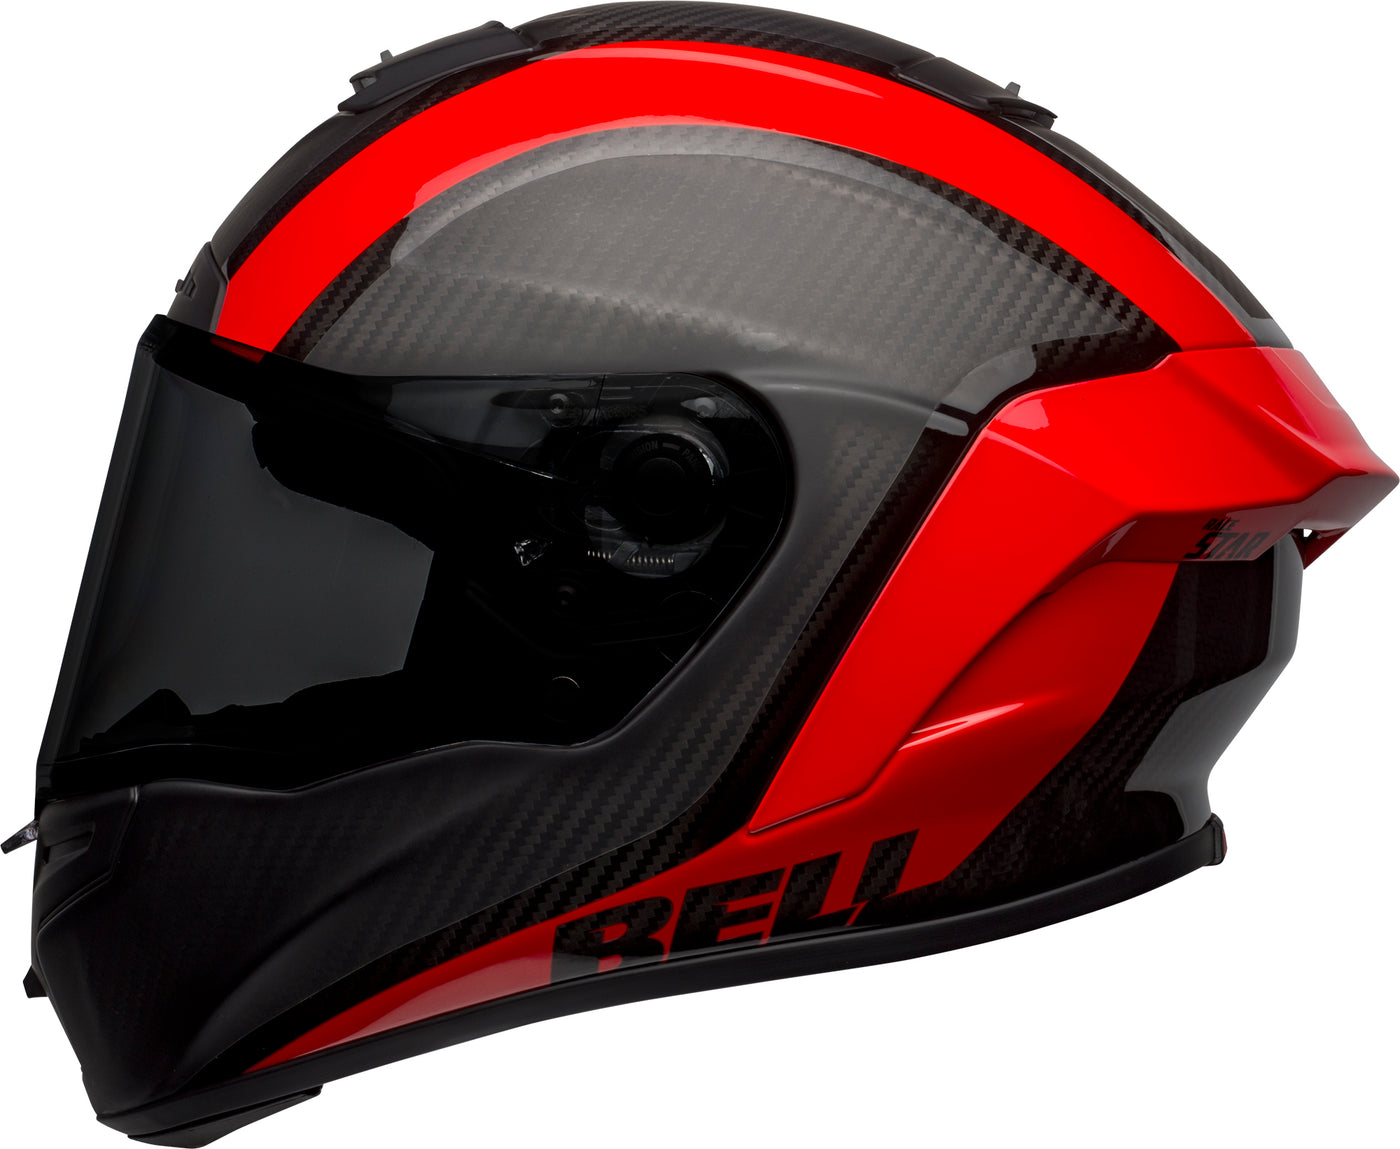 Bell Helmets Race Star DLX Flex - Tantrum 2 Matte/Gloss Black/Red